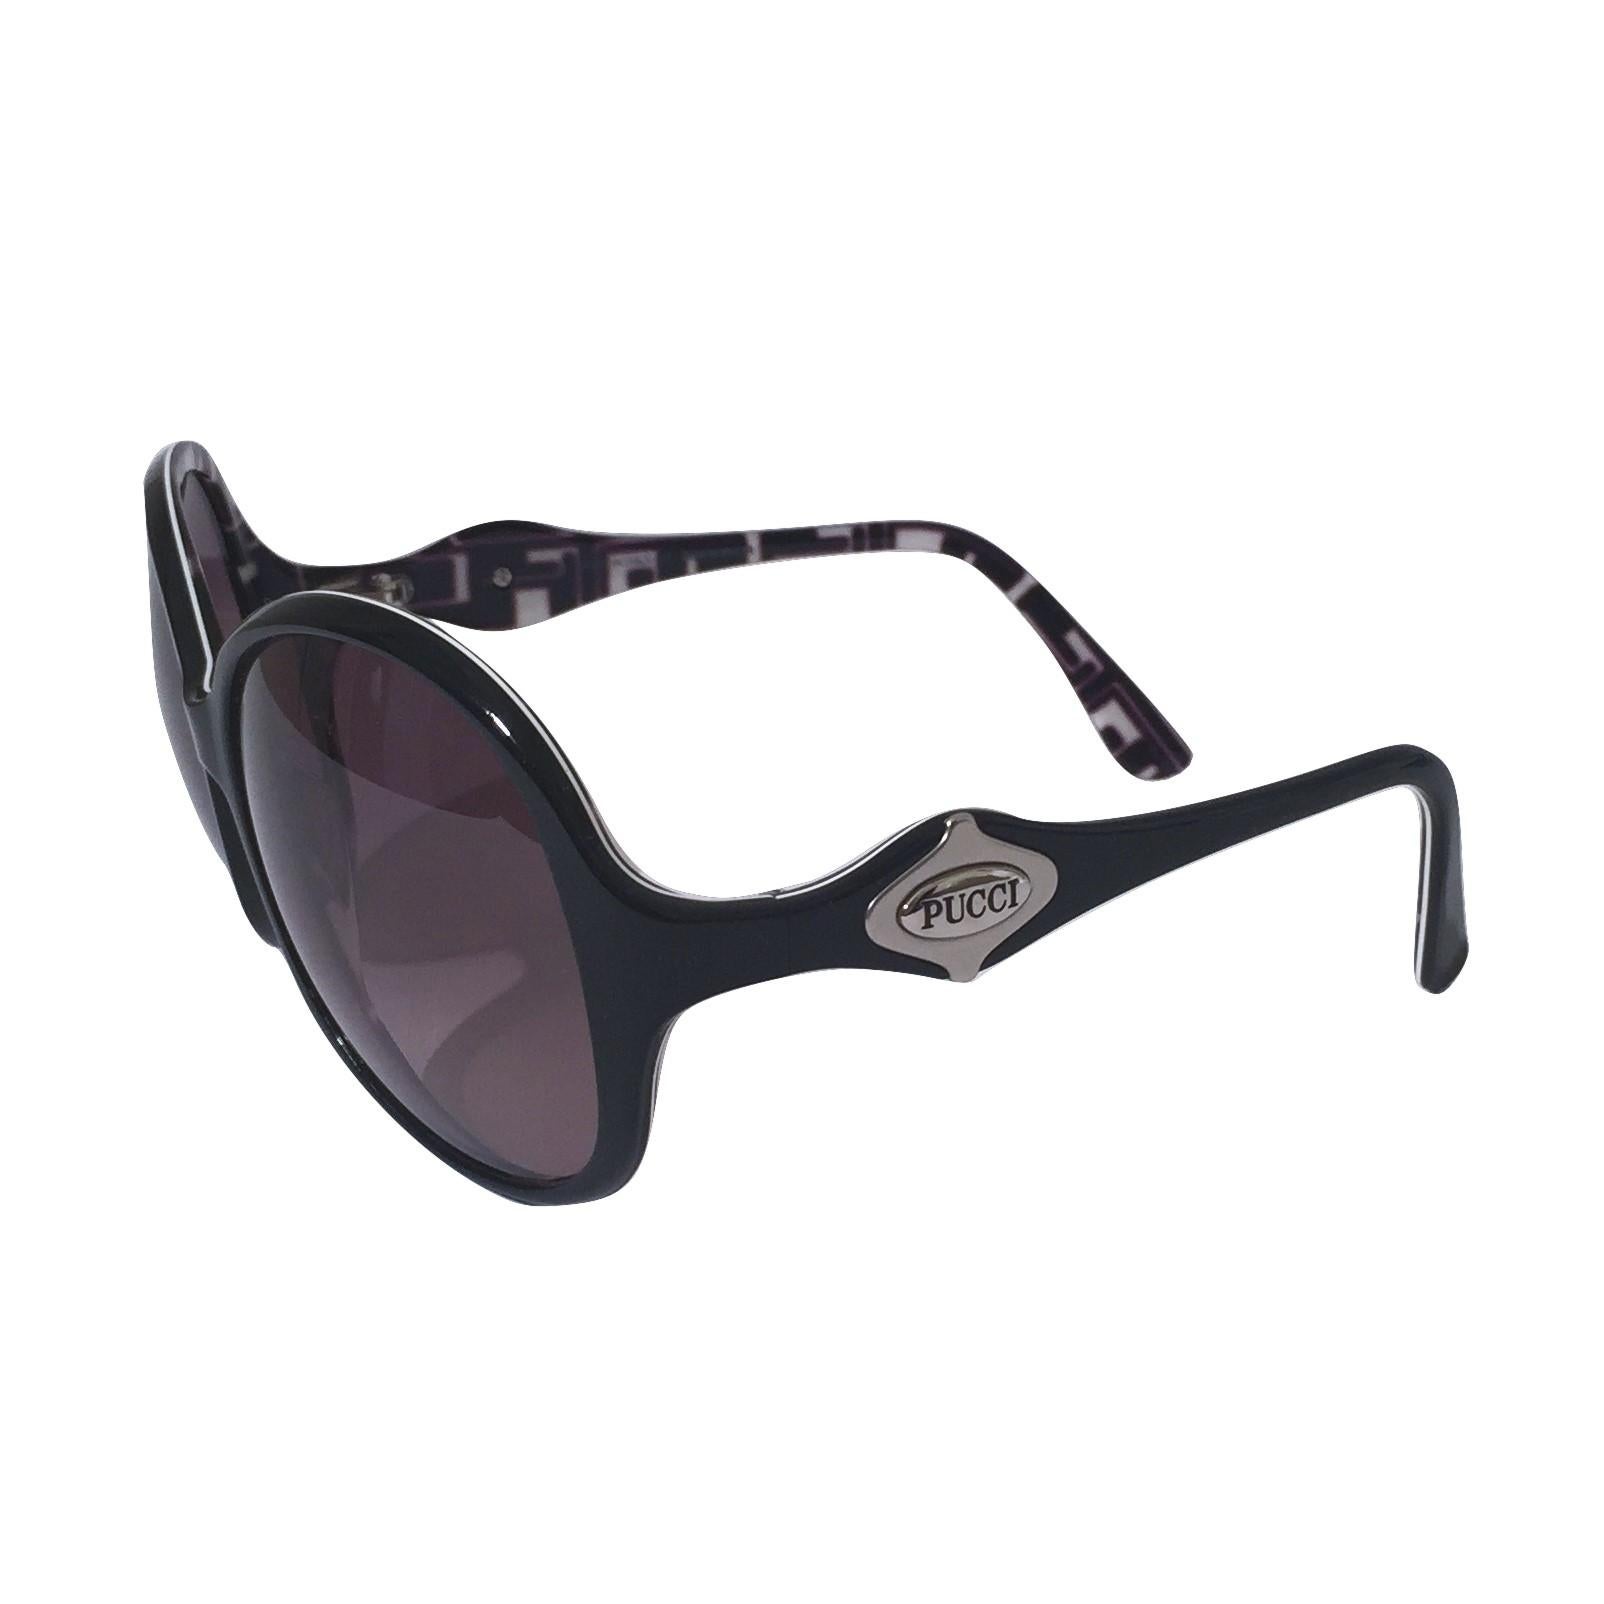 New Emilio Pucci Black Logo Sunglasses With Case & Box 1